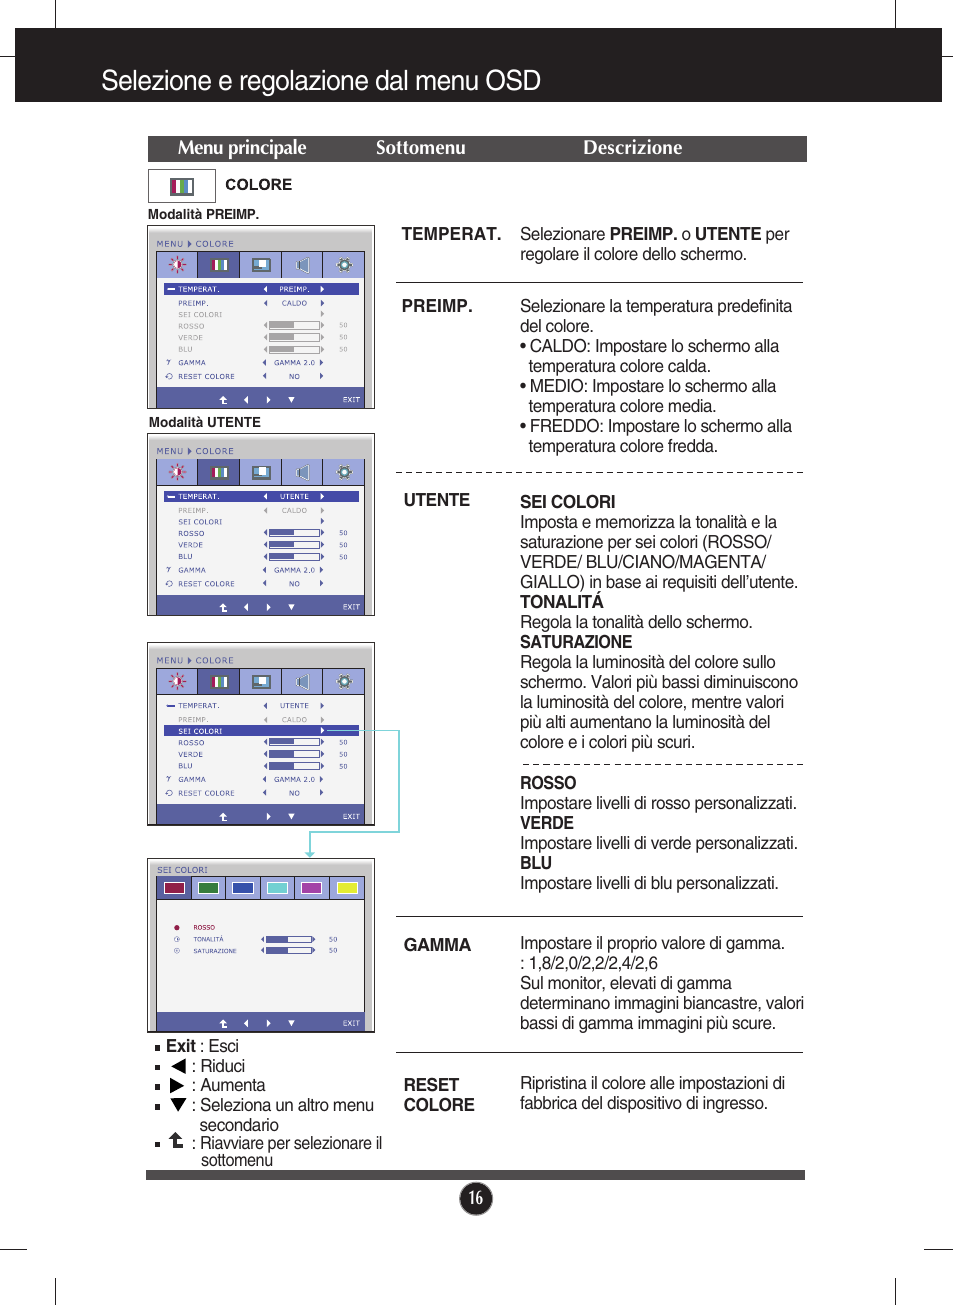 Colore, Selezione e regolazione dal menu osd | LG IPS226V-PN Manuale d'uso | Pagina 17 / 32